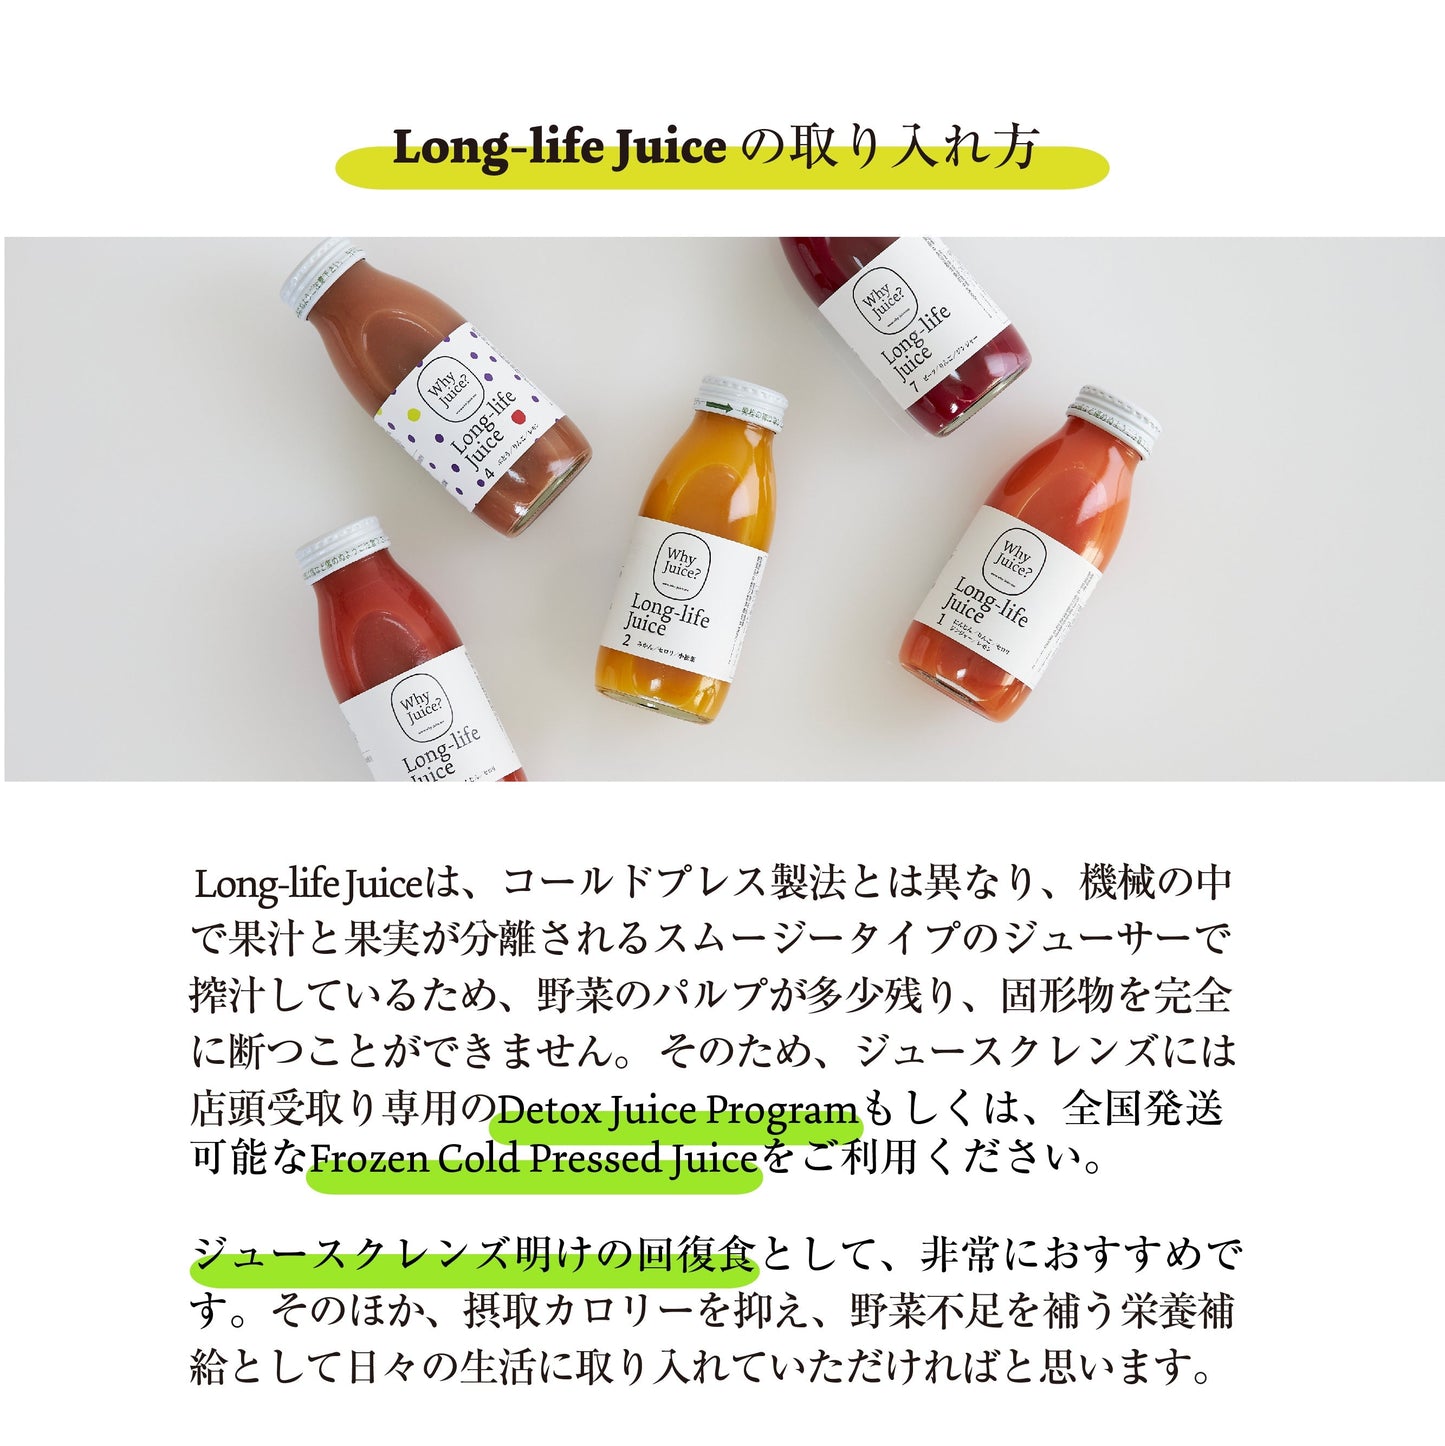 【無添加ジュース】Long-life Juice 3本ギフトボックス(果物たっぷりセット)